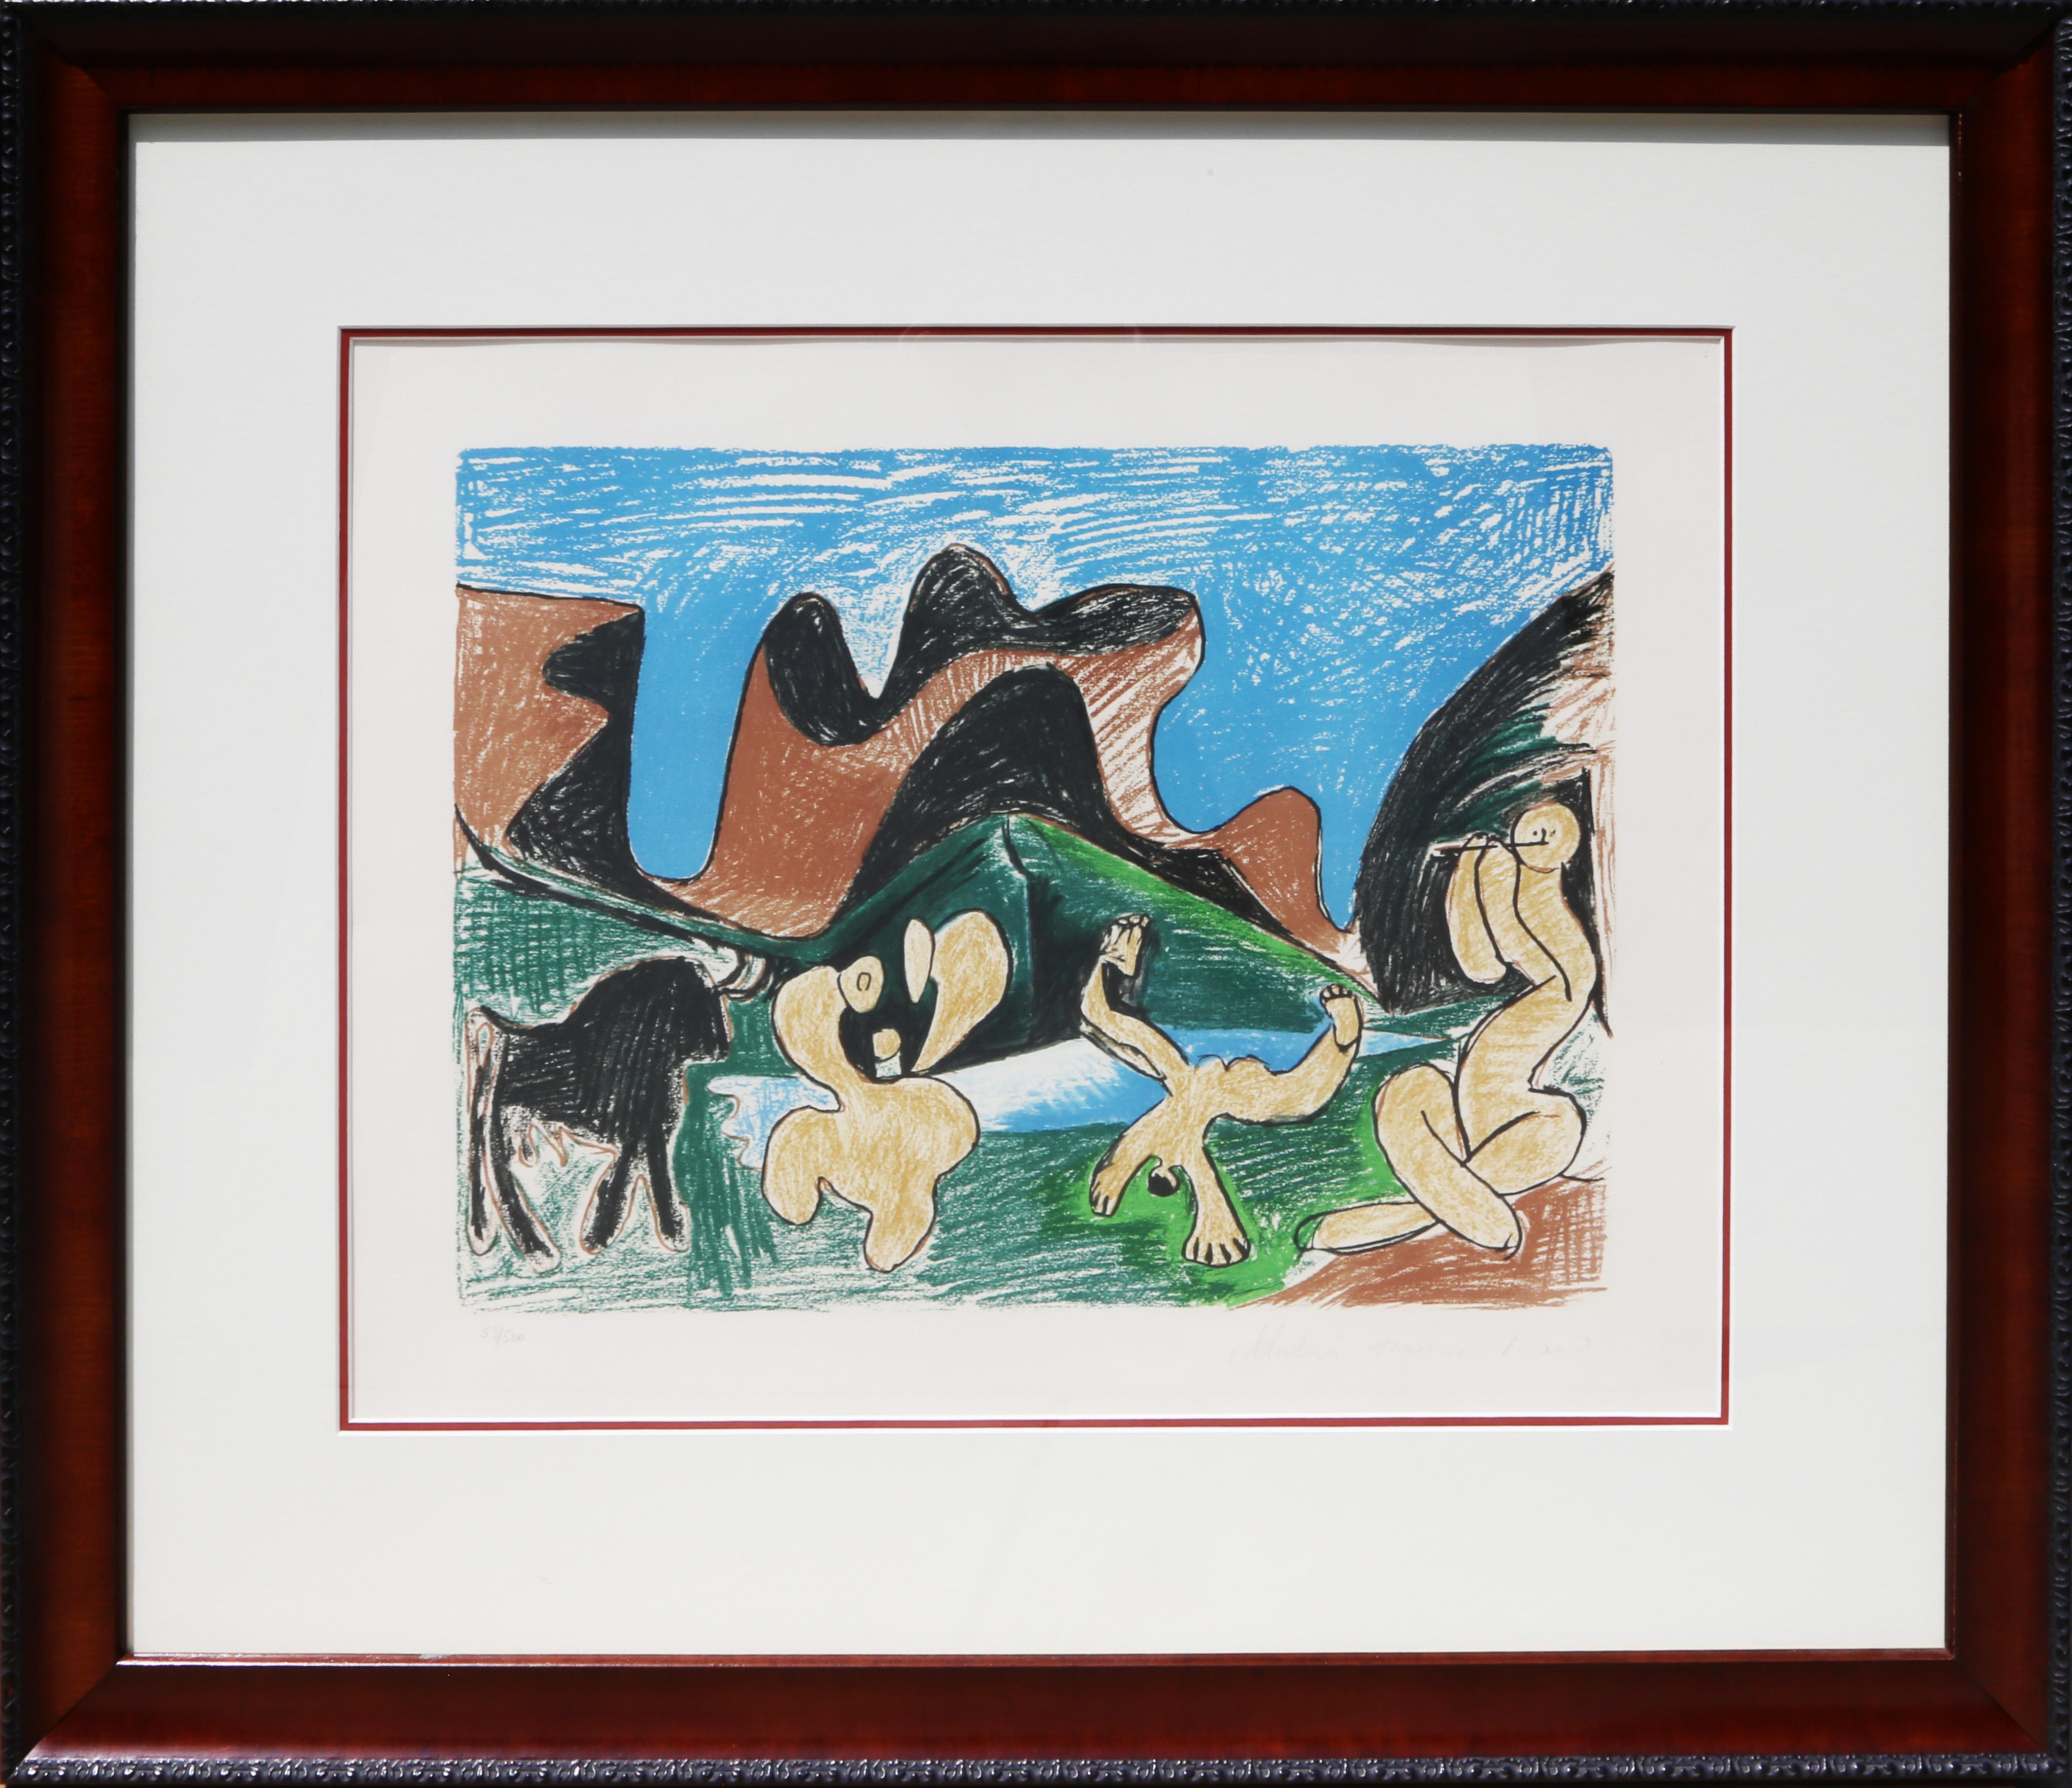 Une lithographie provenant de la Collection SALE de Marina Picasso d'après le tableau "Bacchanale" de Pablo Picasso.  La peinture originale a été réalisée vers 1922. Dans les années 1970, après la mort de Picasso, Marina Picasso, sa petite-fille, a